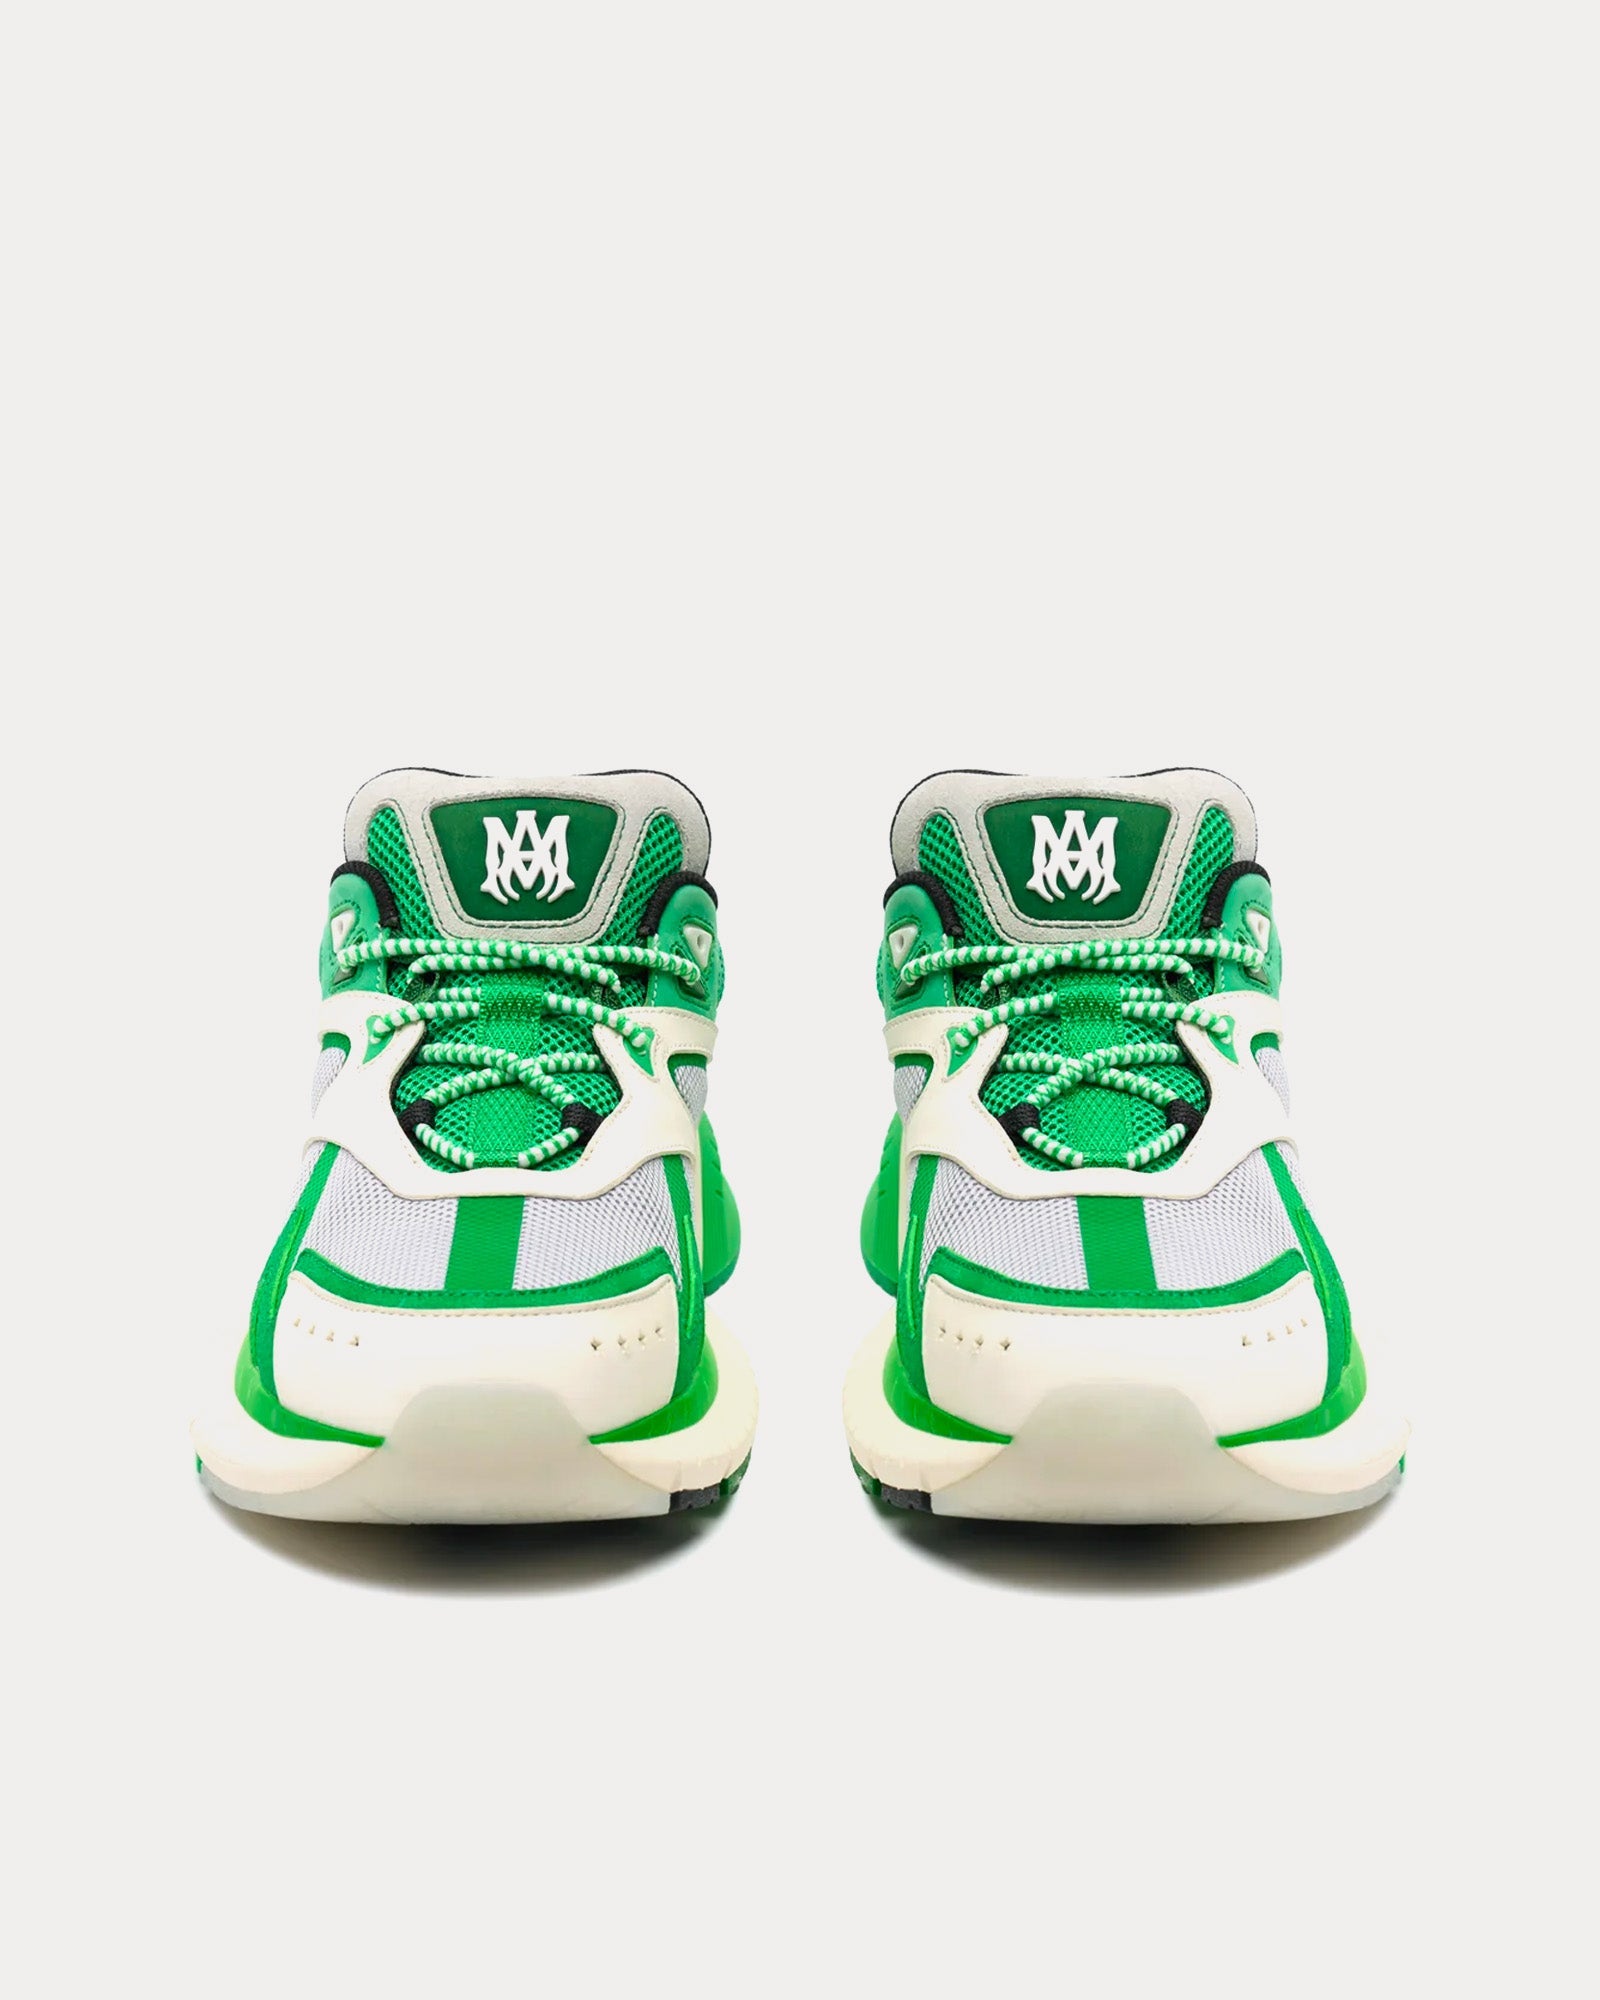 AMIRI - MA Runner Green Low Top Sneakers